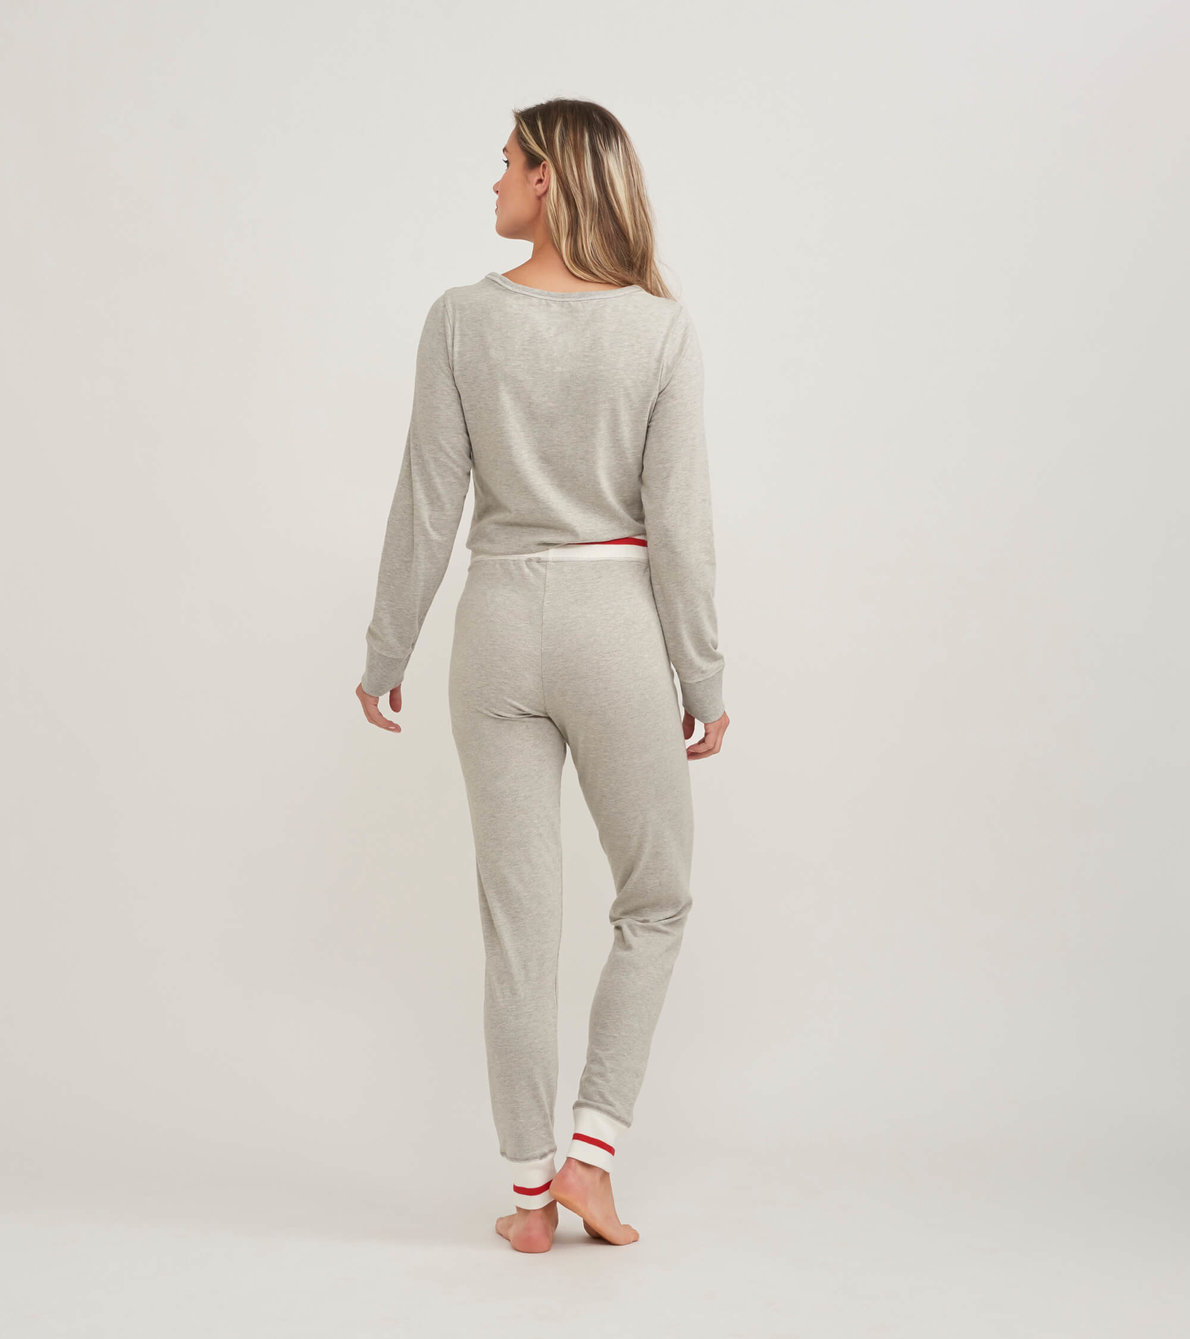 View larger image of Work Sock Women's Jersey Pajama Set